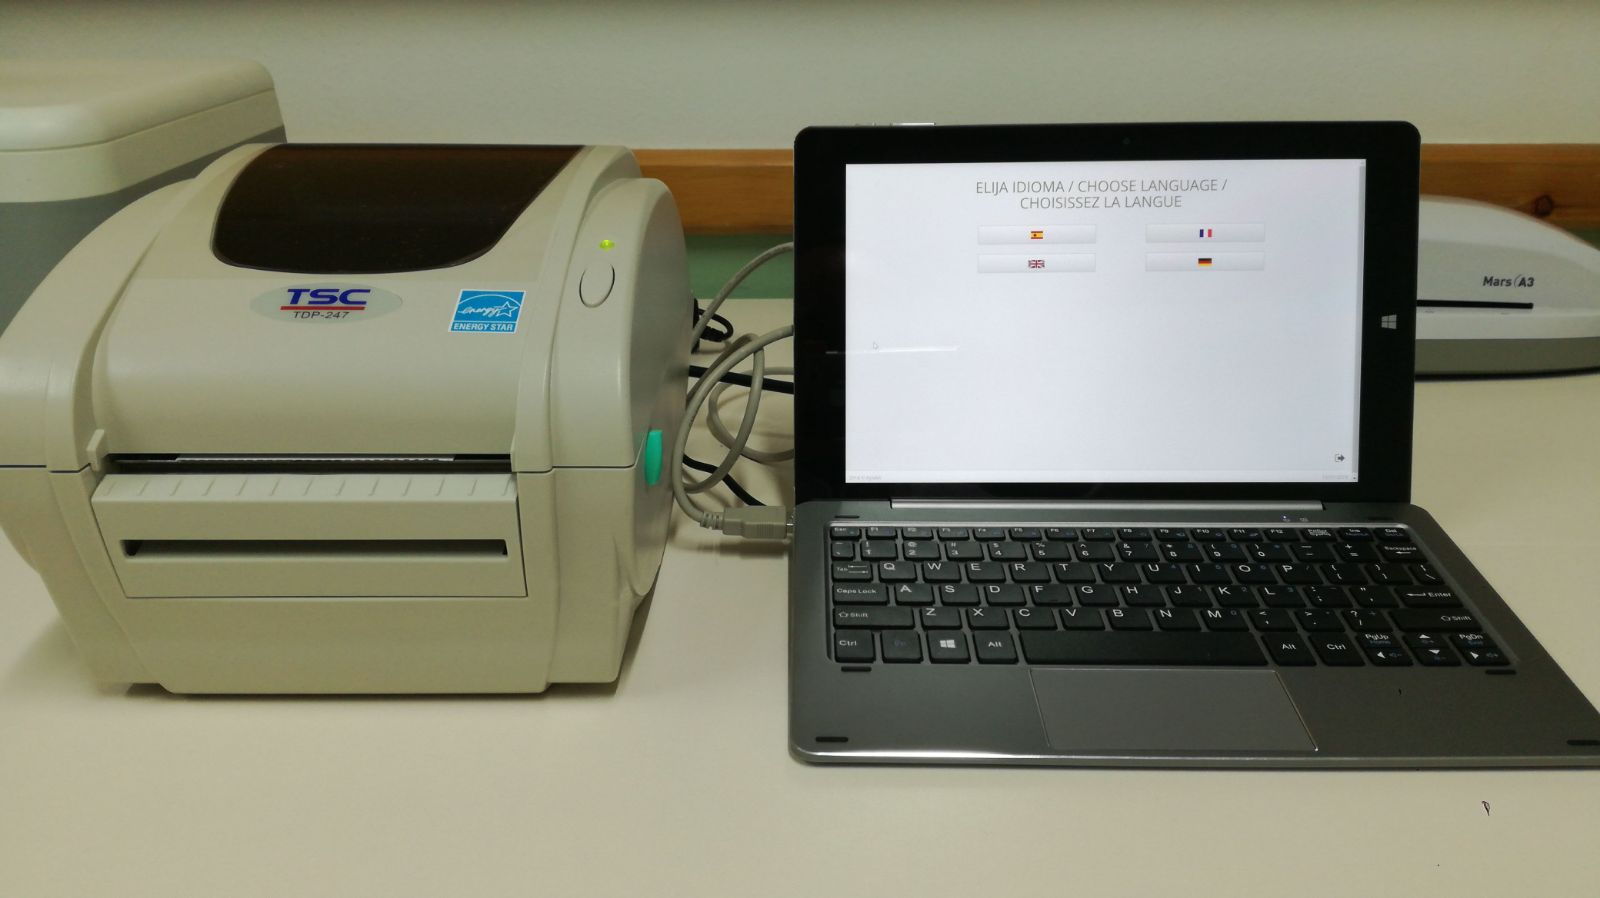 Impresora TSC TDP-247 y tablet para impresión de permisos de pesca